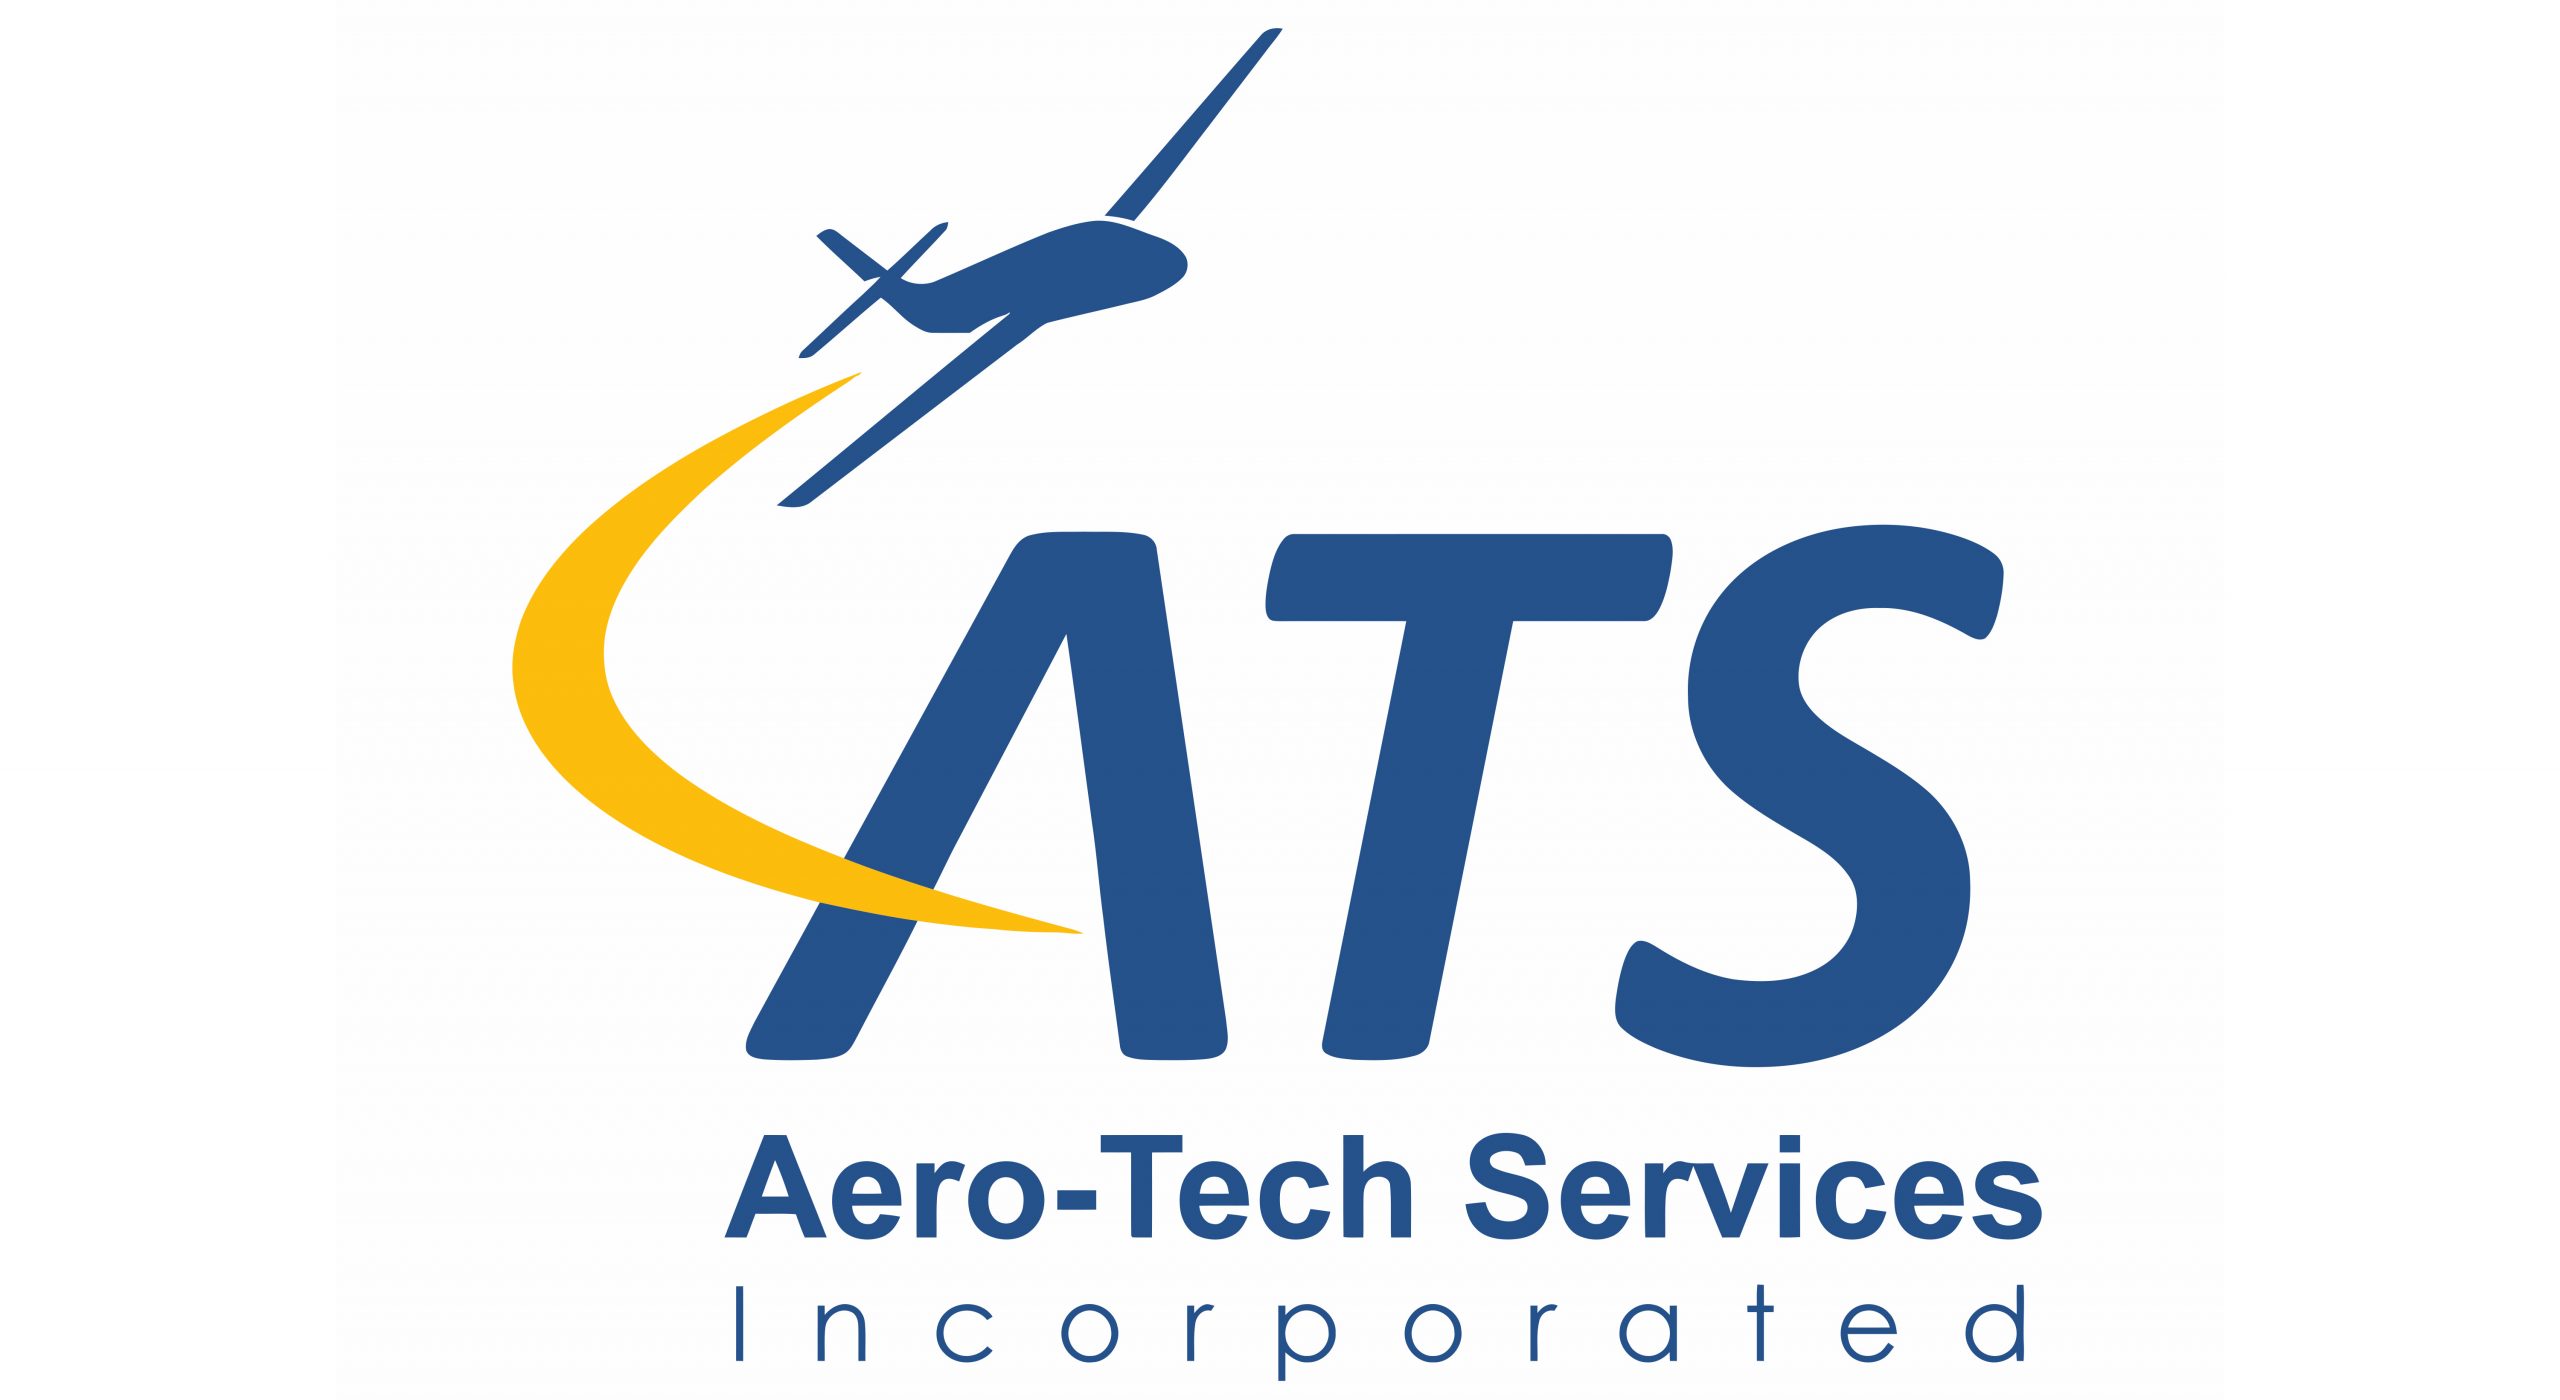 Aero-Tech Services Incorporated